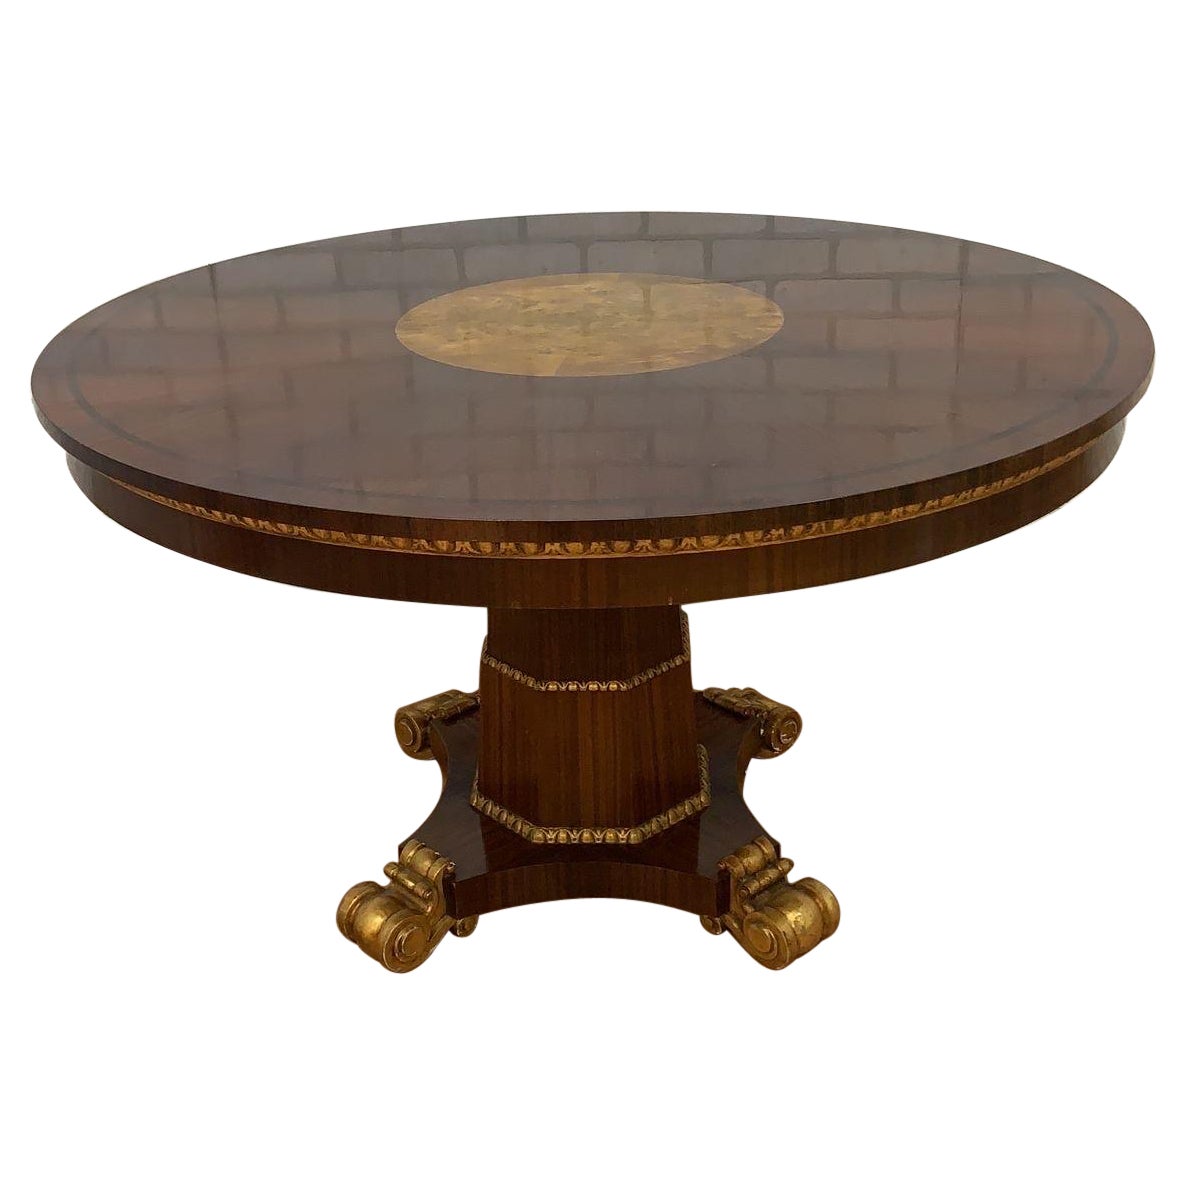 Ancienne table ronde à piédestal de style Empire français